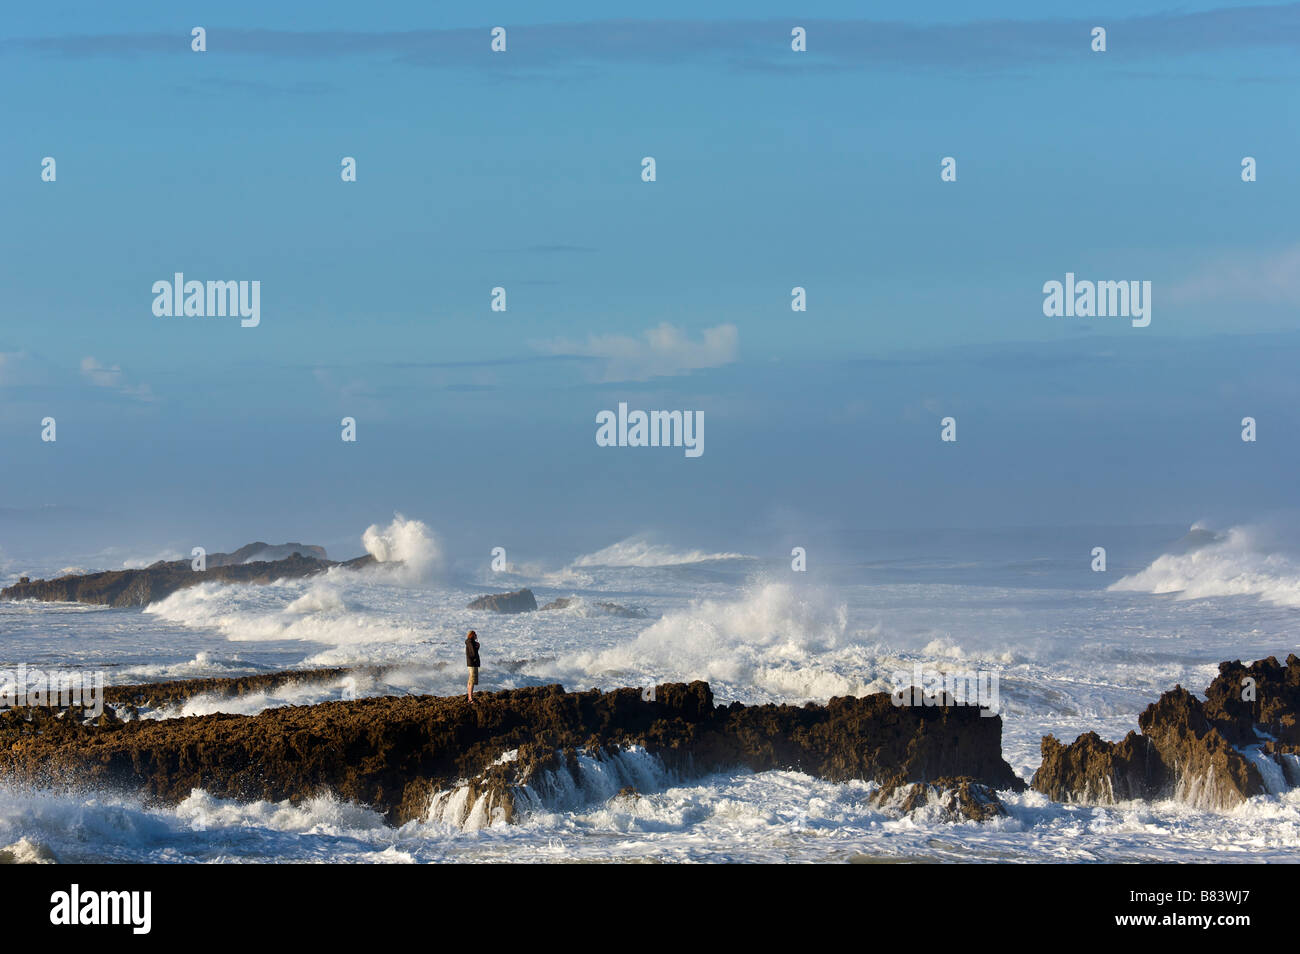 Grandi onde sulla costa vicino a Oualidia Marocco Foto Stock